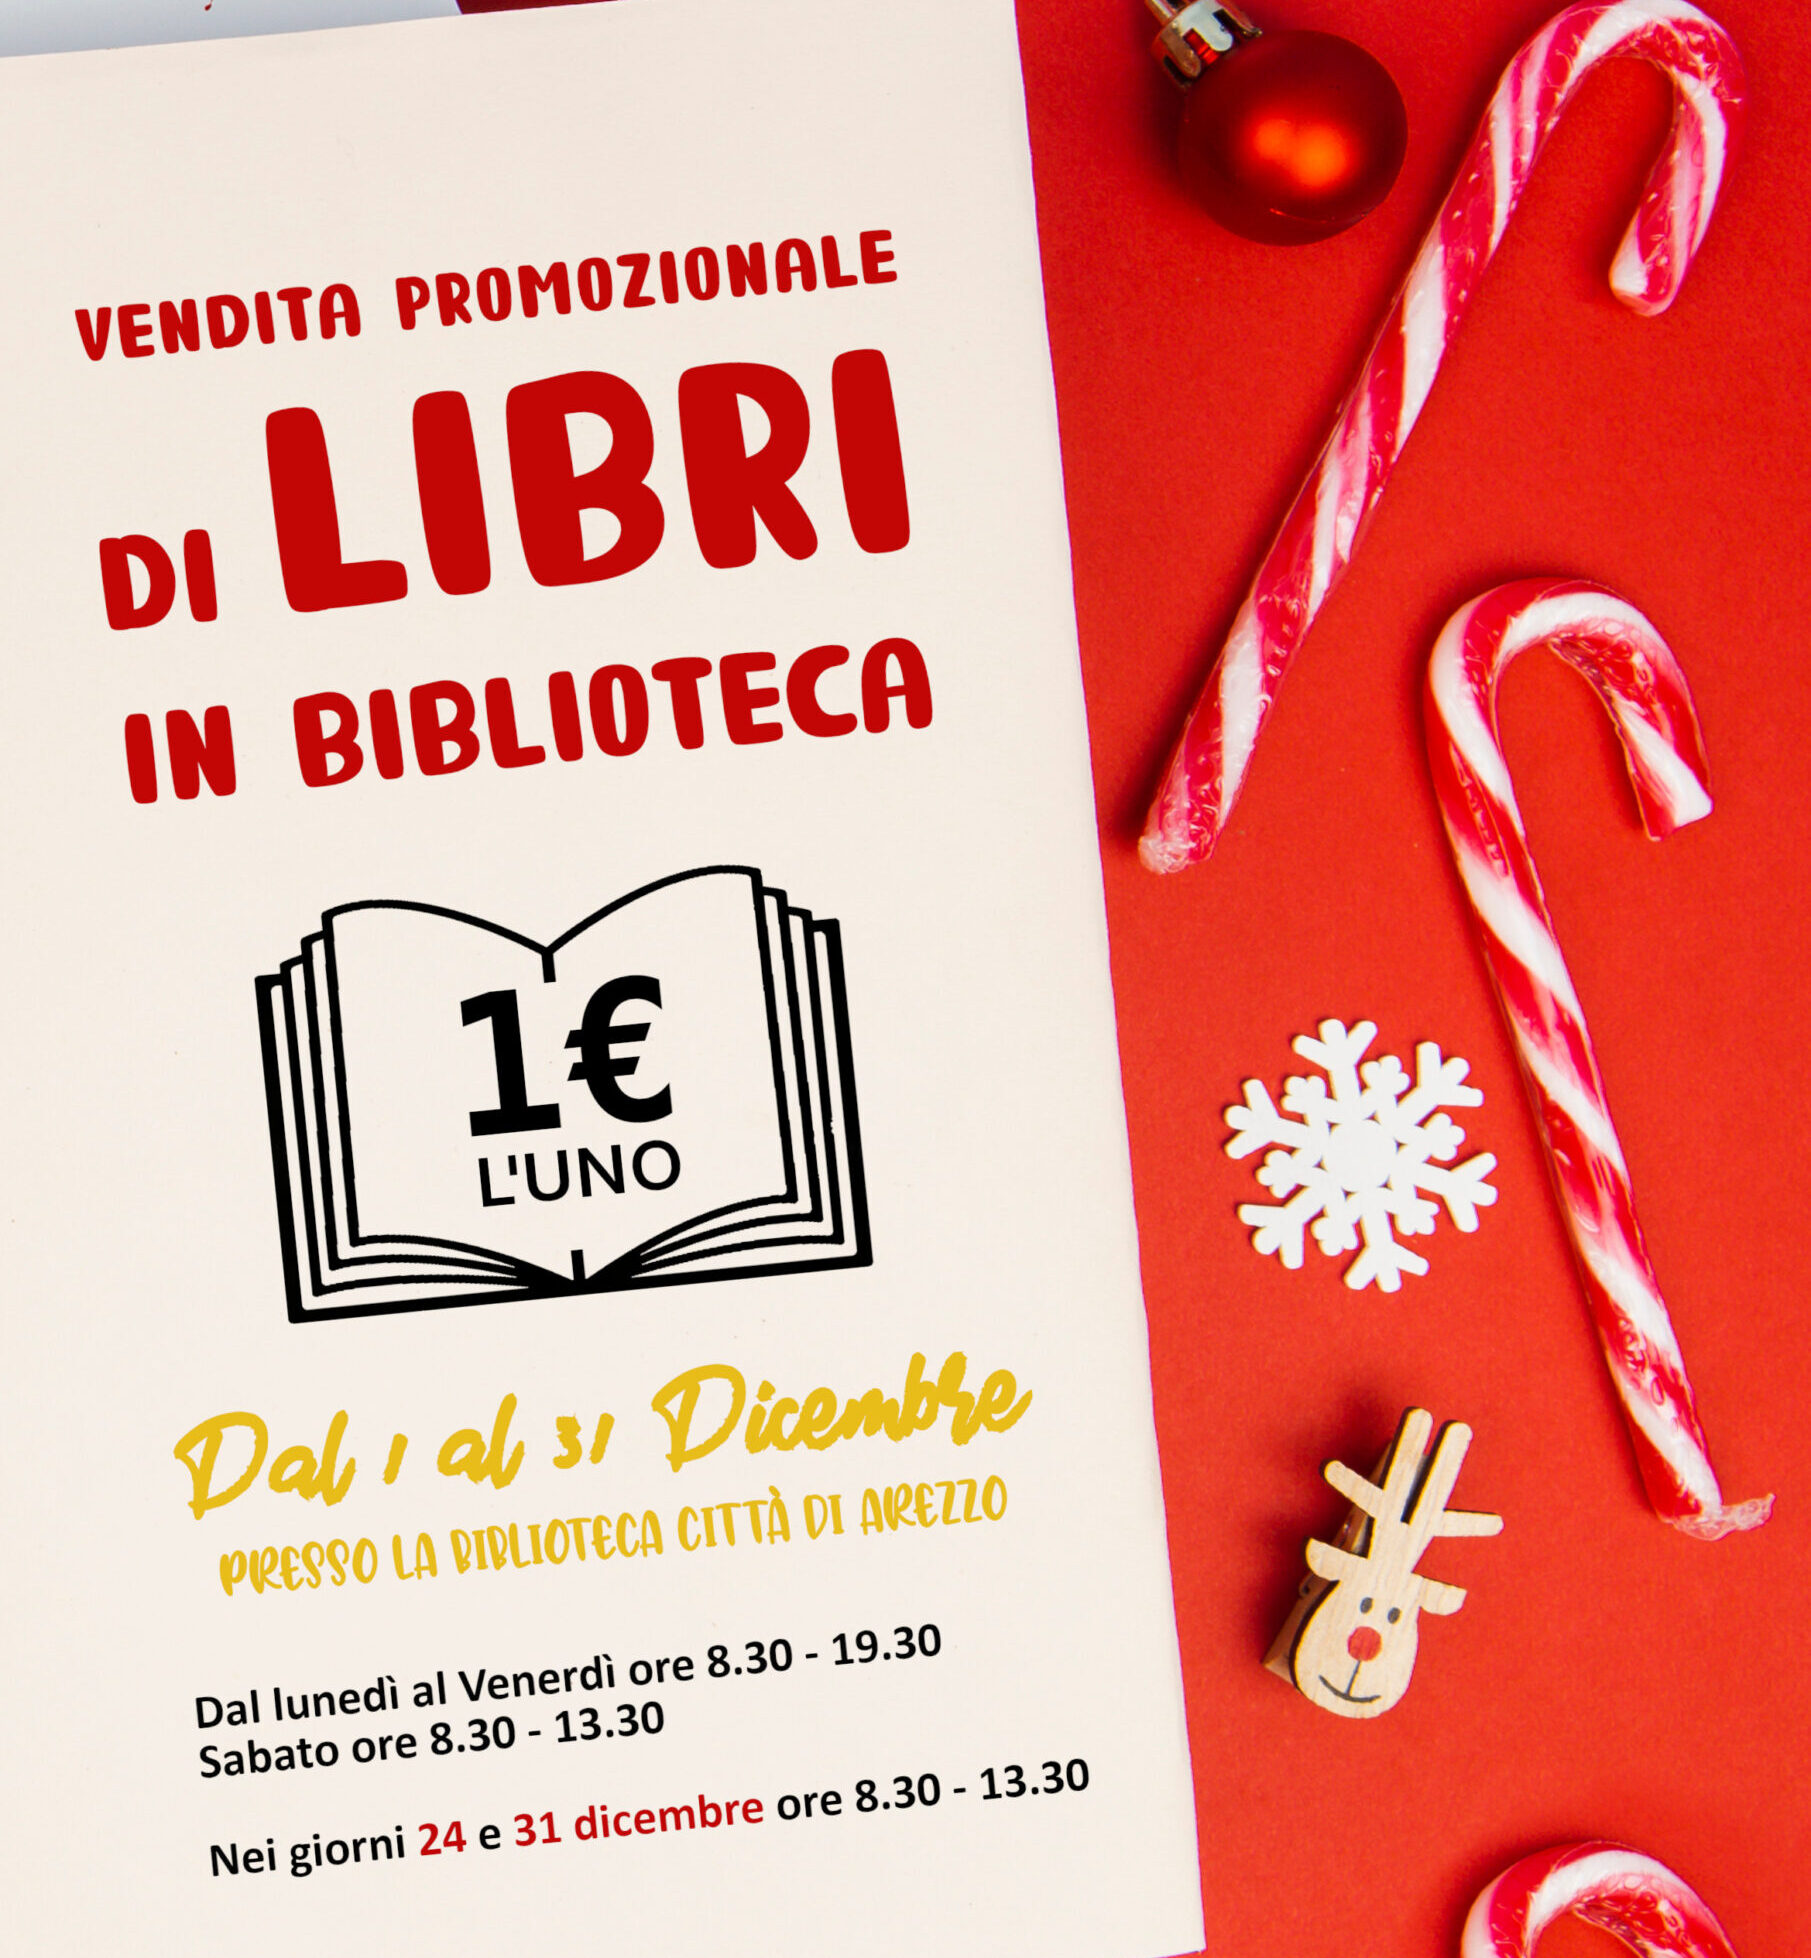 Biblioteca Città di Arezzo: torna la vendita promozionale ad un 1 euro